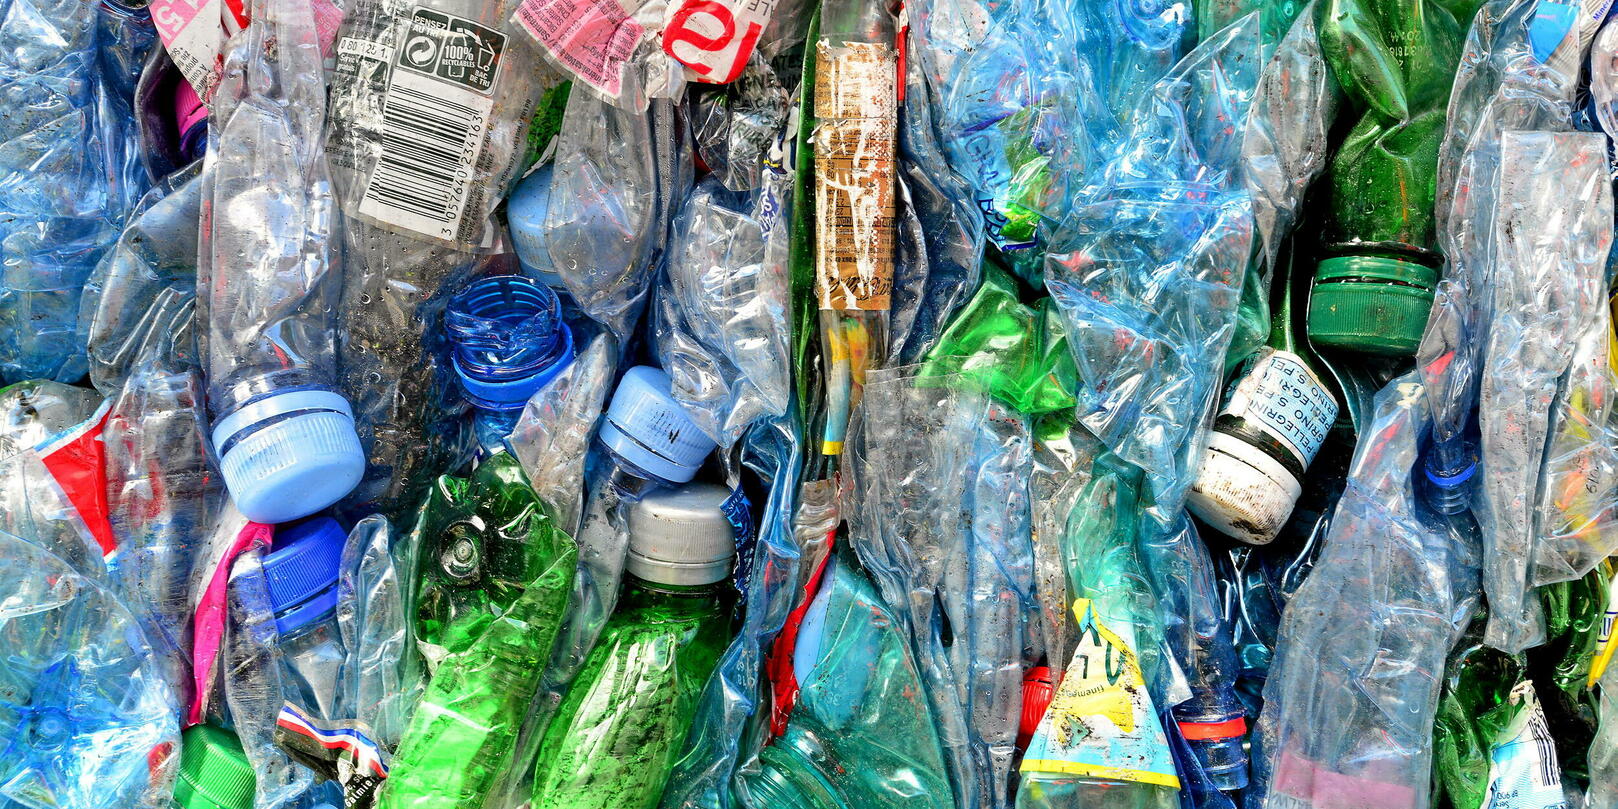 Née à Lille, la société Exquado met fin aux bouteilles plastique